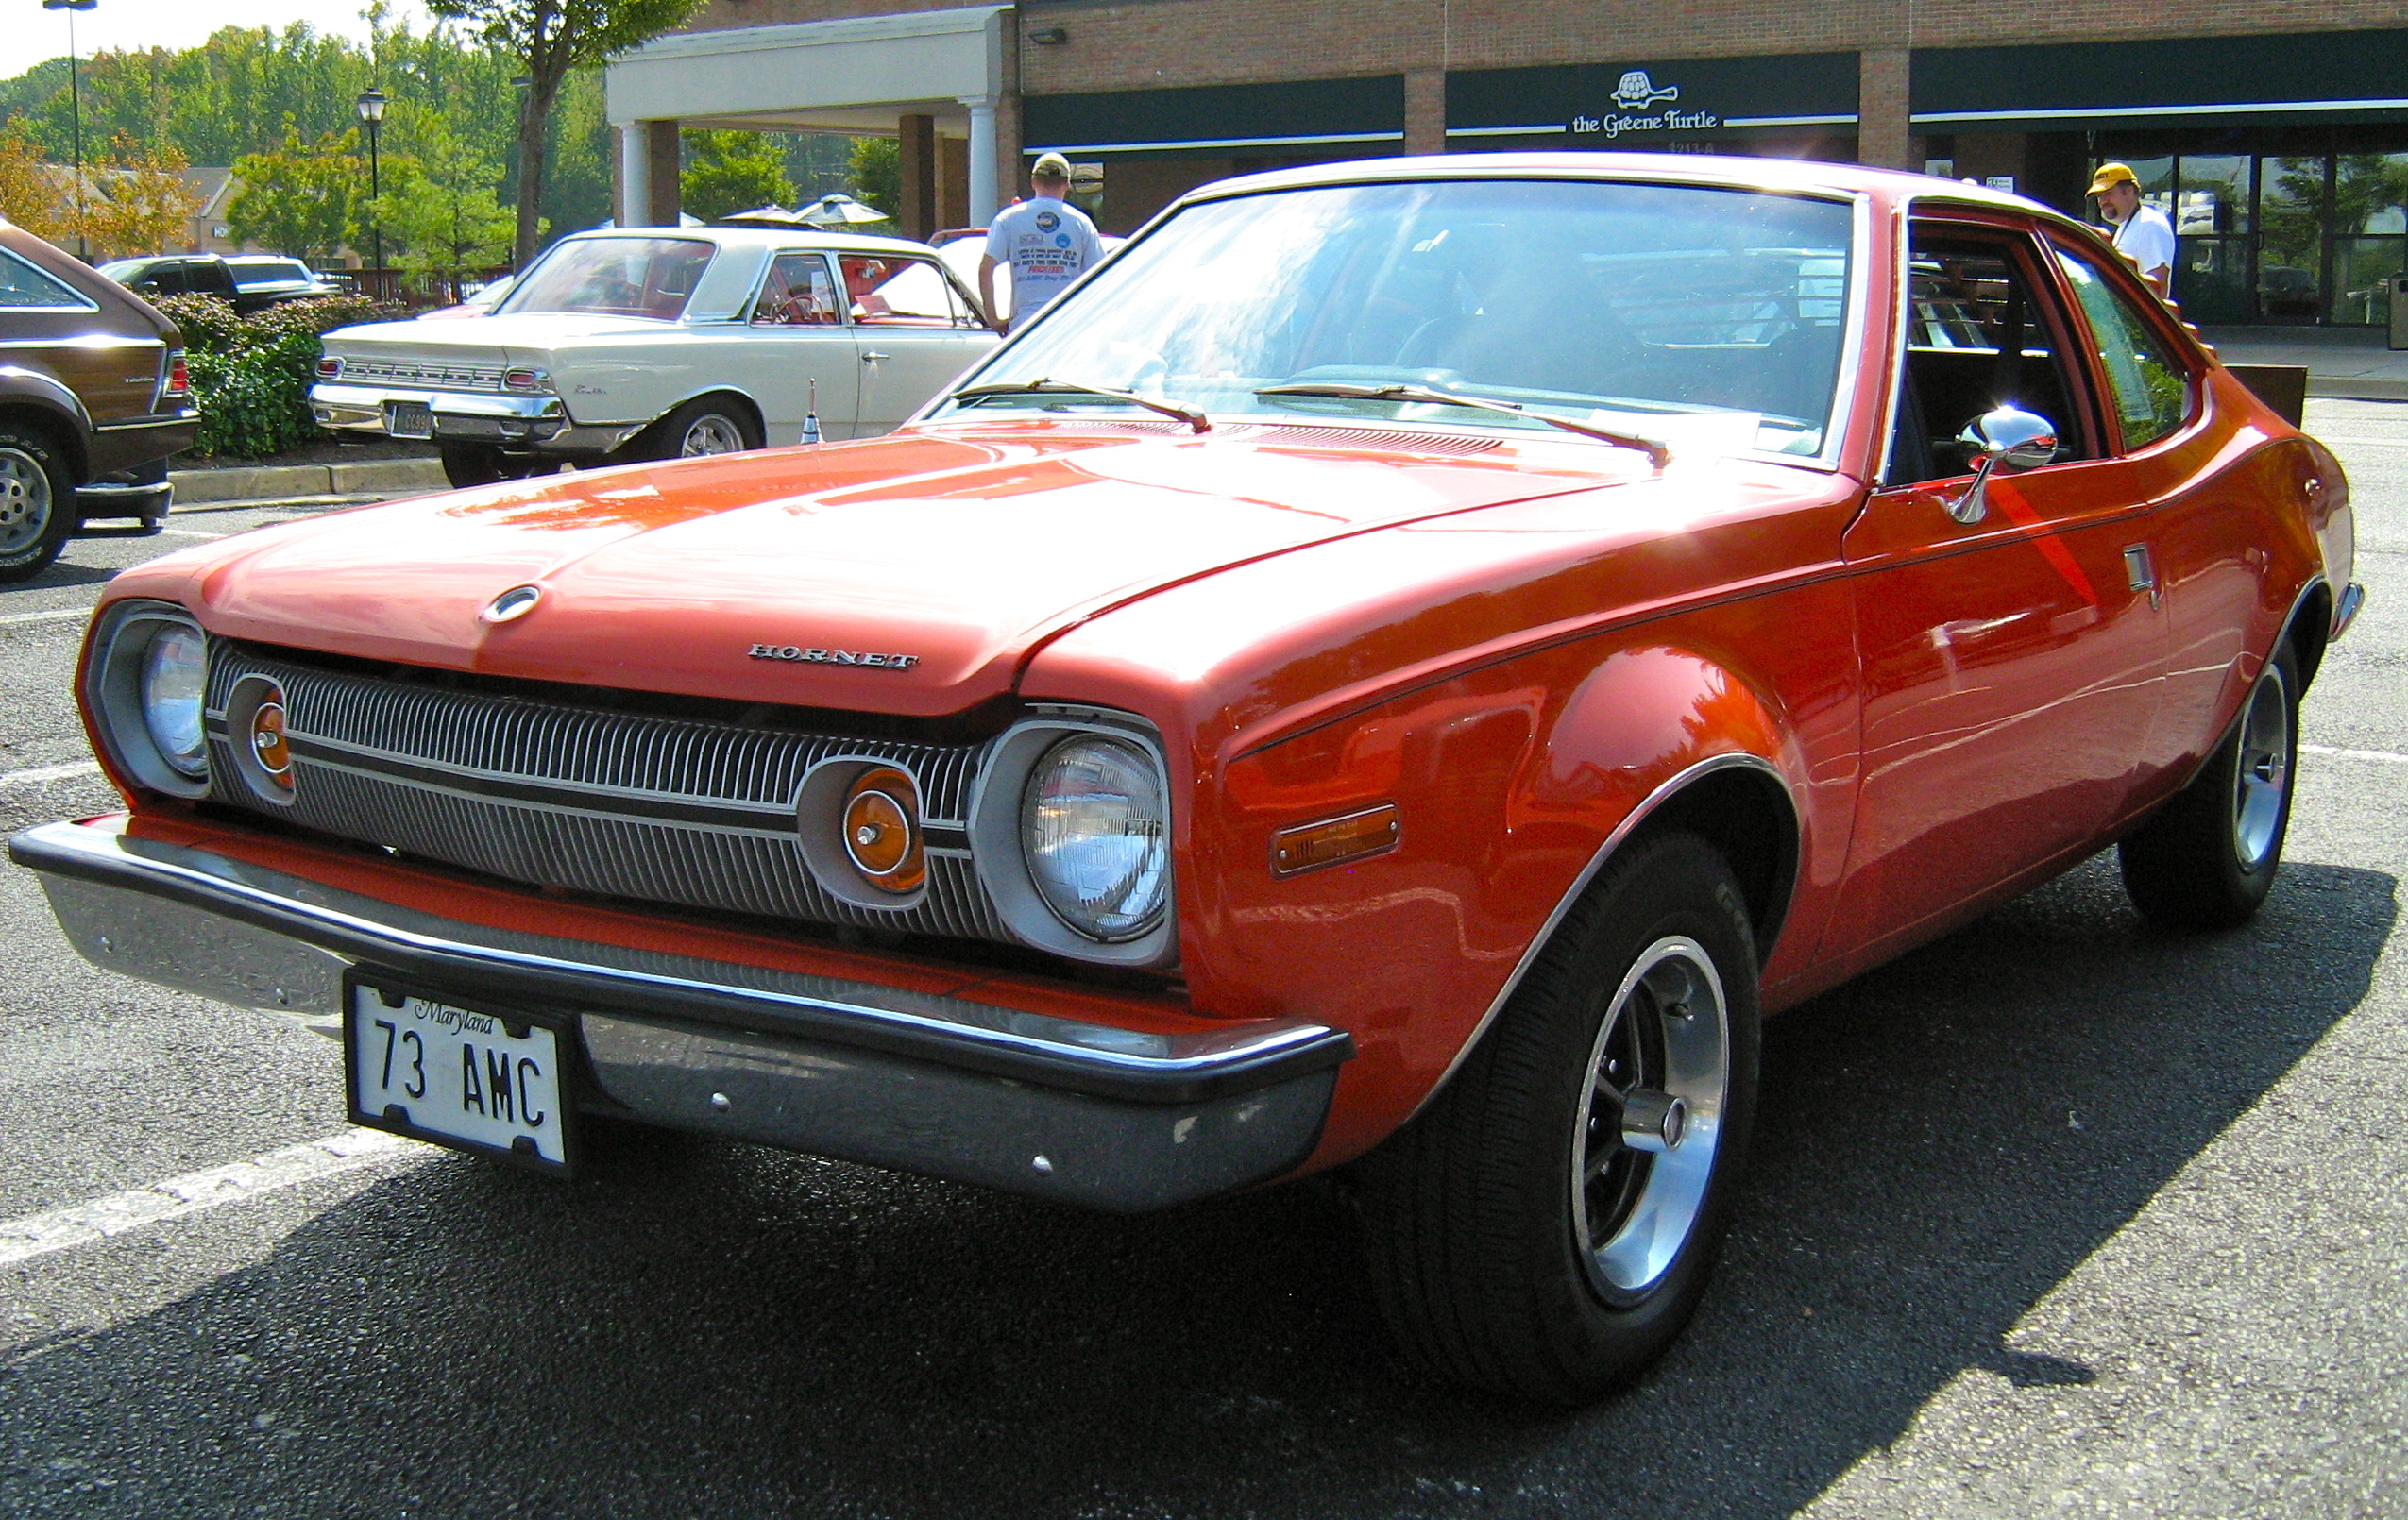 1973 AMC Hornet hatchback V8 red MD-fl